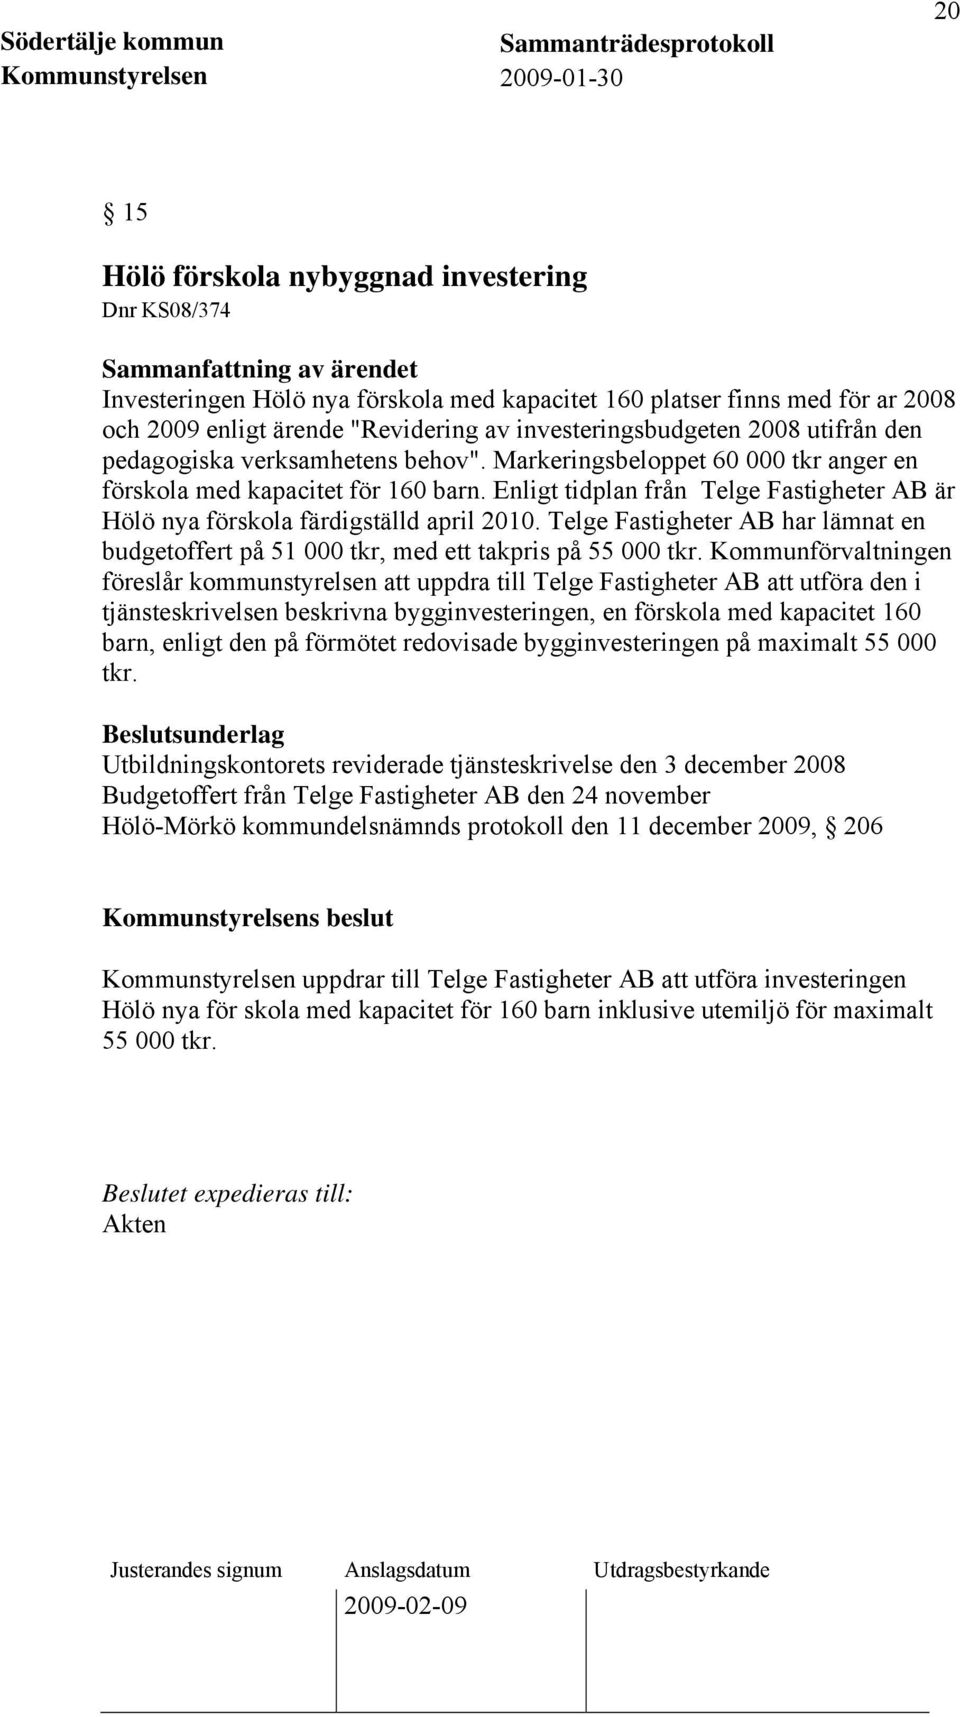 Enligt tidplan från Telge Fastigheter AB är Hölö nya förskola färdigställd april 2010. Telge Fastigheter AB har lämnat en budgetoffert på 51 000 tkr, med ett takpris på 55 000 tkr.